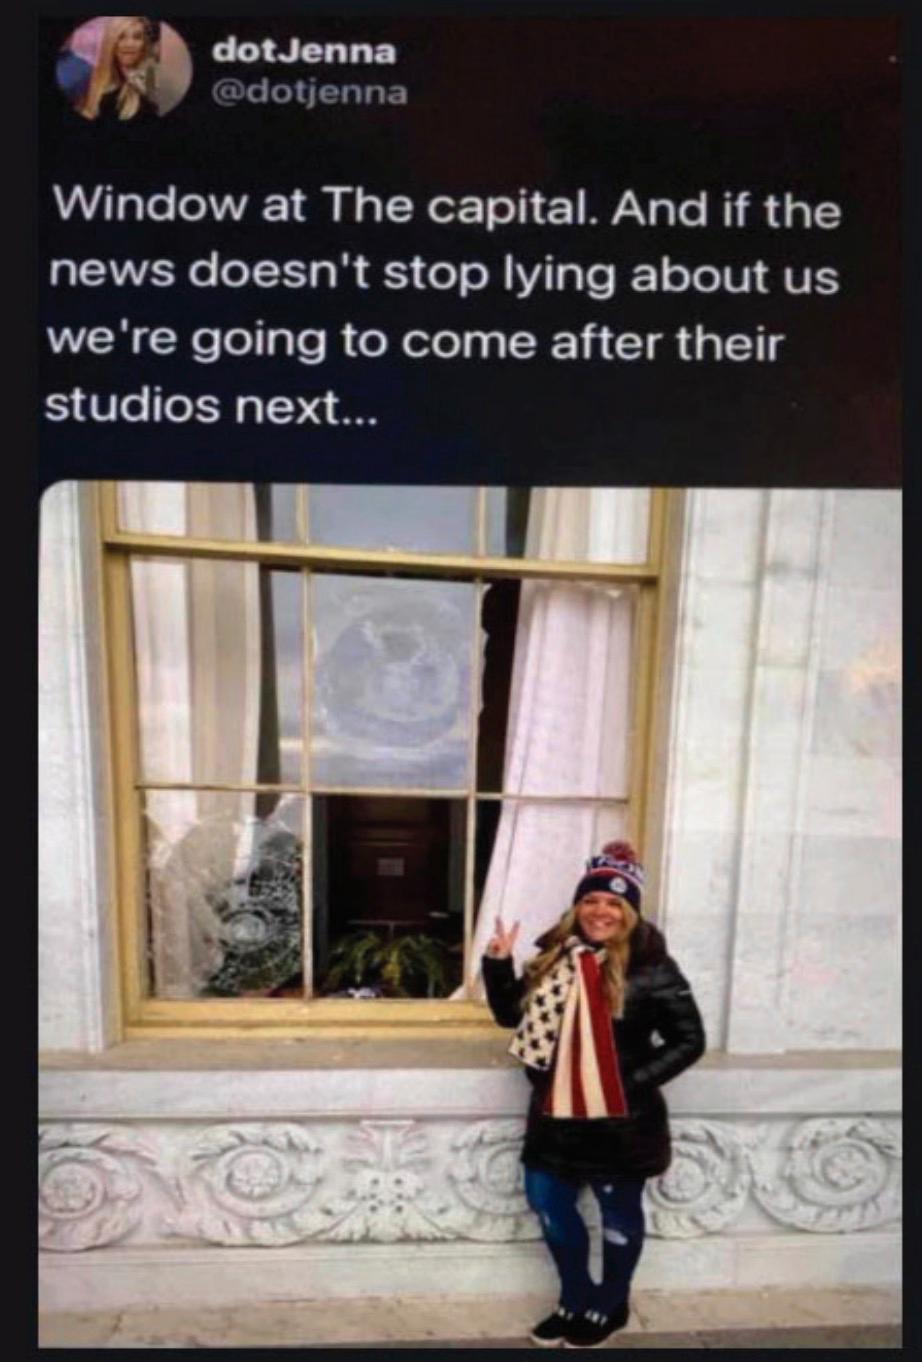 Under stormningenav Kapitolium postade Jenna Ryan en bild på sociala medier där hon poserar framför krossade rutor. ”Jag anade aldrig att hela världen skulle se bilden”, säger hon.